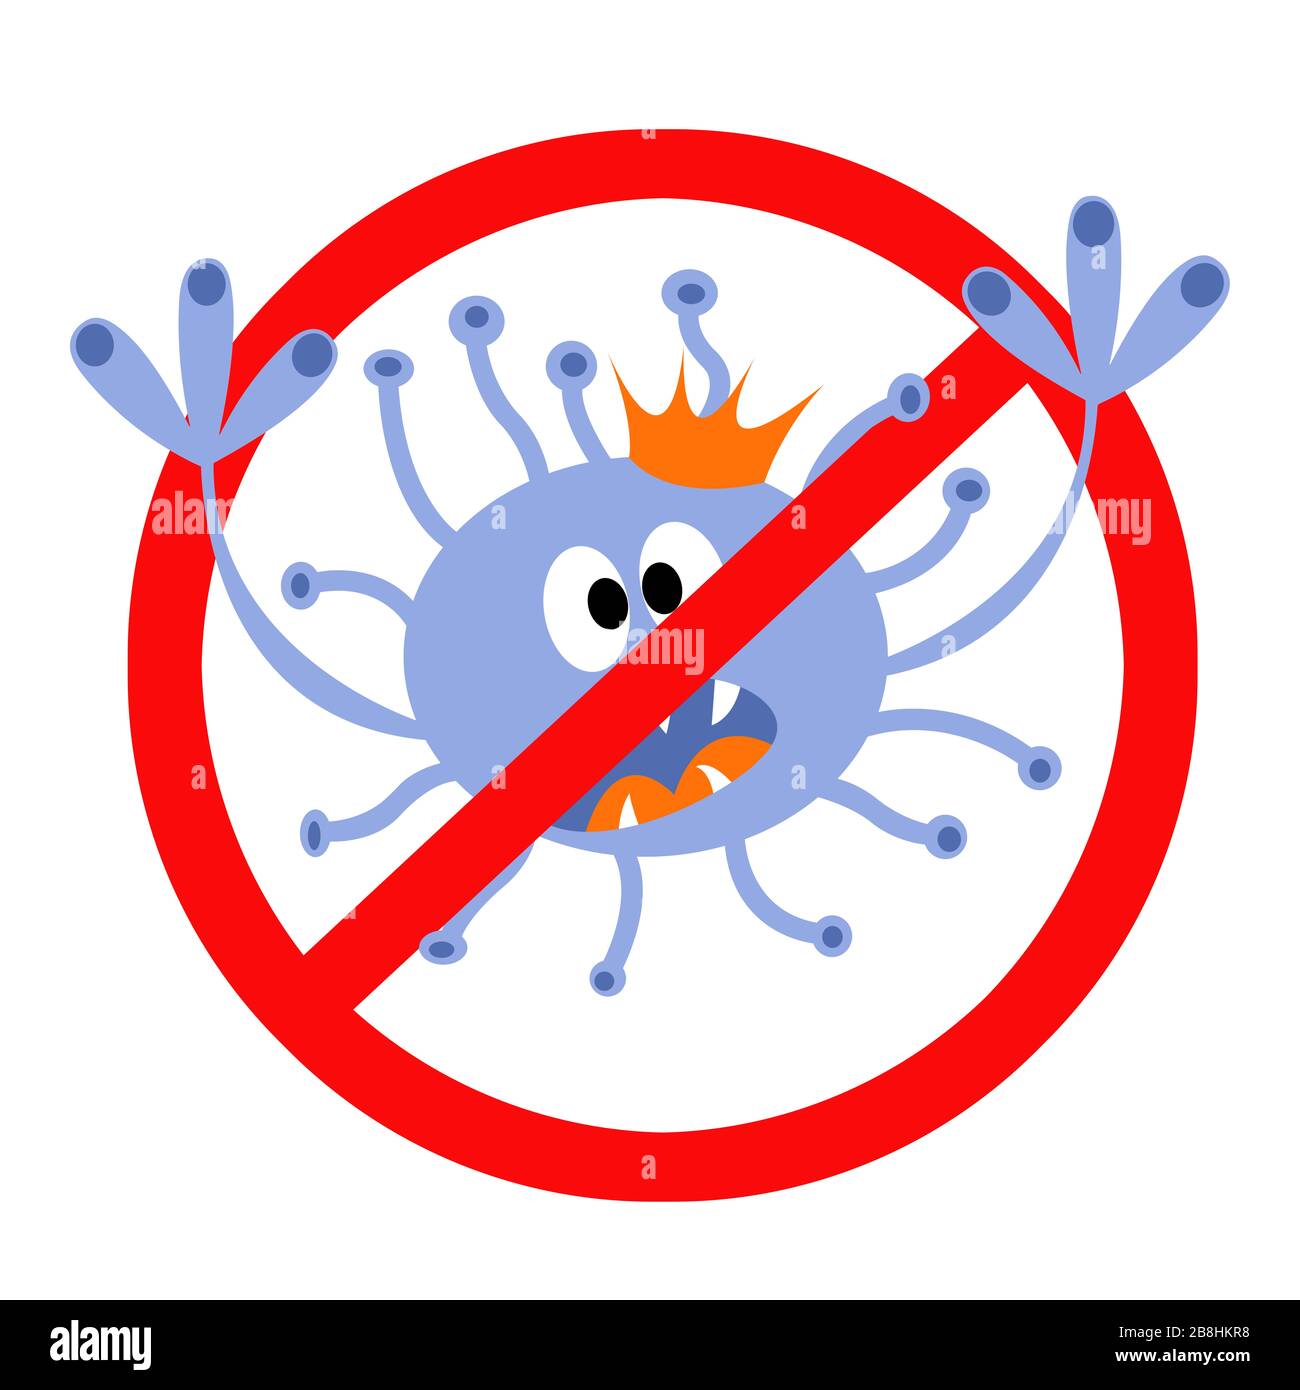 Stop coronovirus. Symbolic isolated image of a coronovirus. Warning of the dangers of a coronovirus. Stock Photo